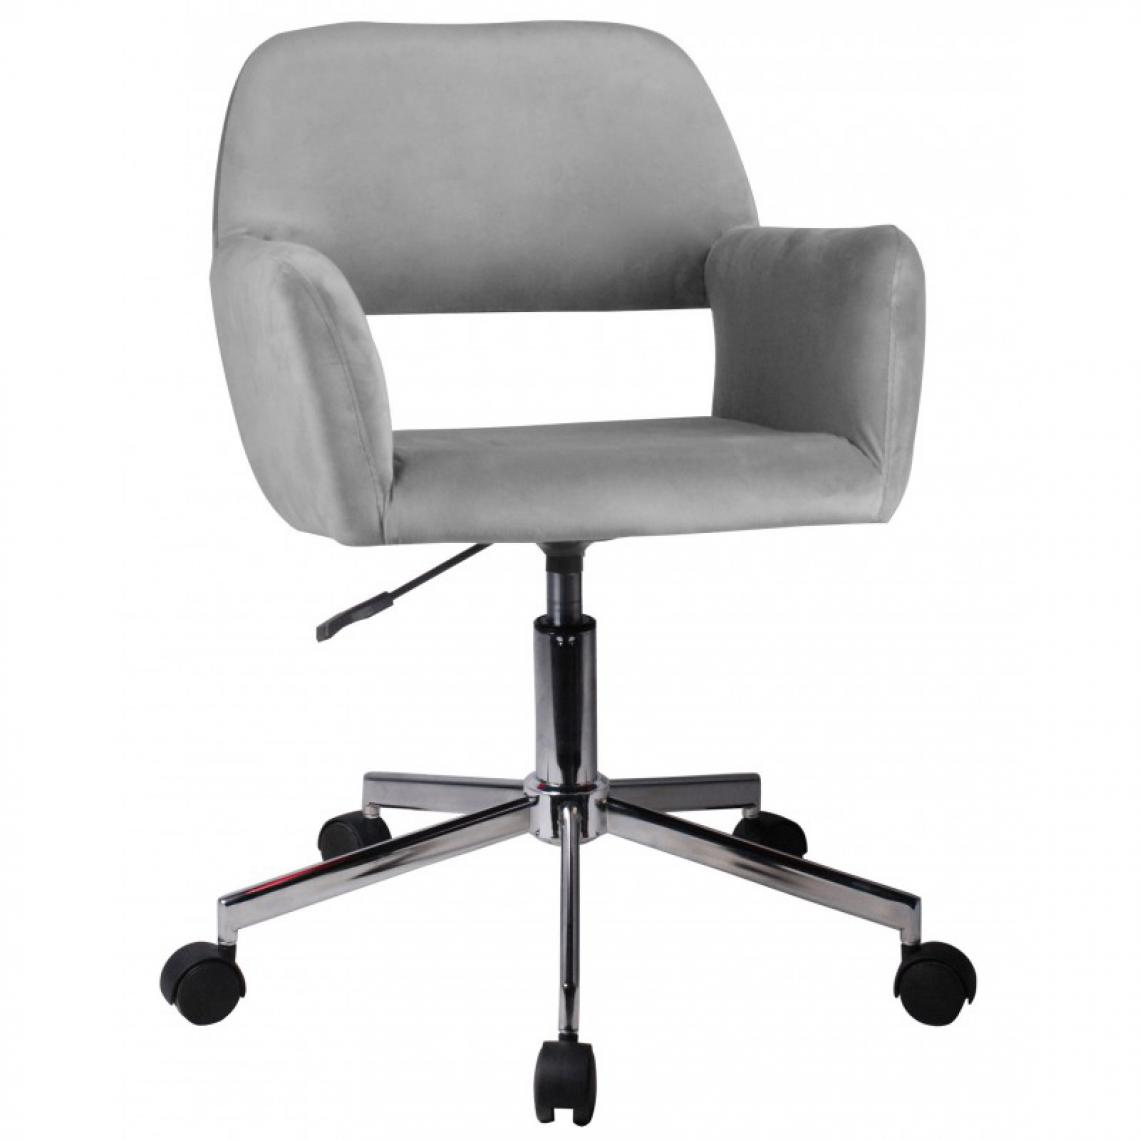 Hucoco - ANISA | Chaise pivotante en velours élégant | Chaise de bureau | Base en acier chromé | Réglable en hauteur 78-90cm - Gris - Chaises